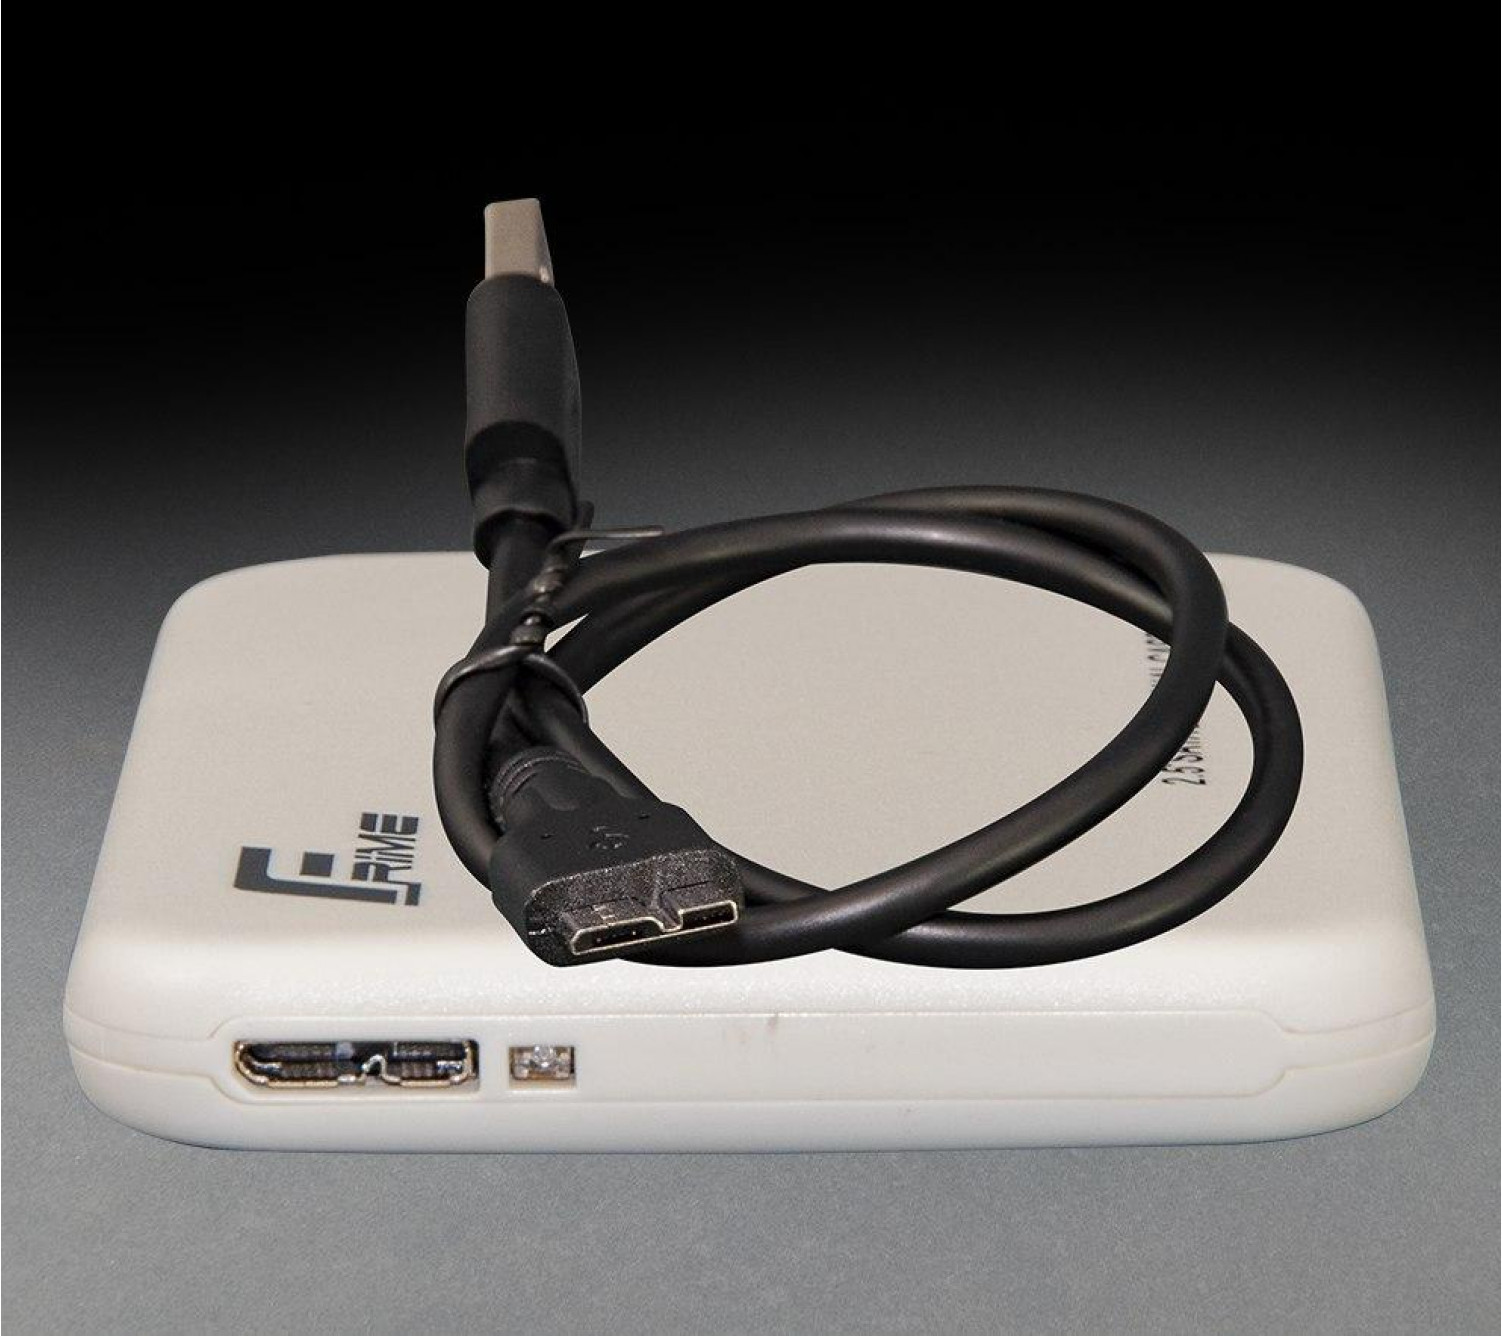 Внешний карман Frime для 2.5 "SATA HDD / SSD Plastic USB 3.0 White 